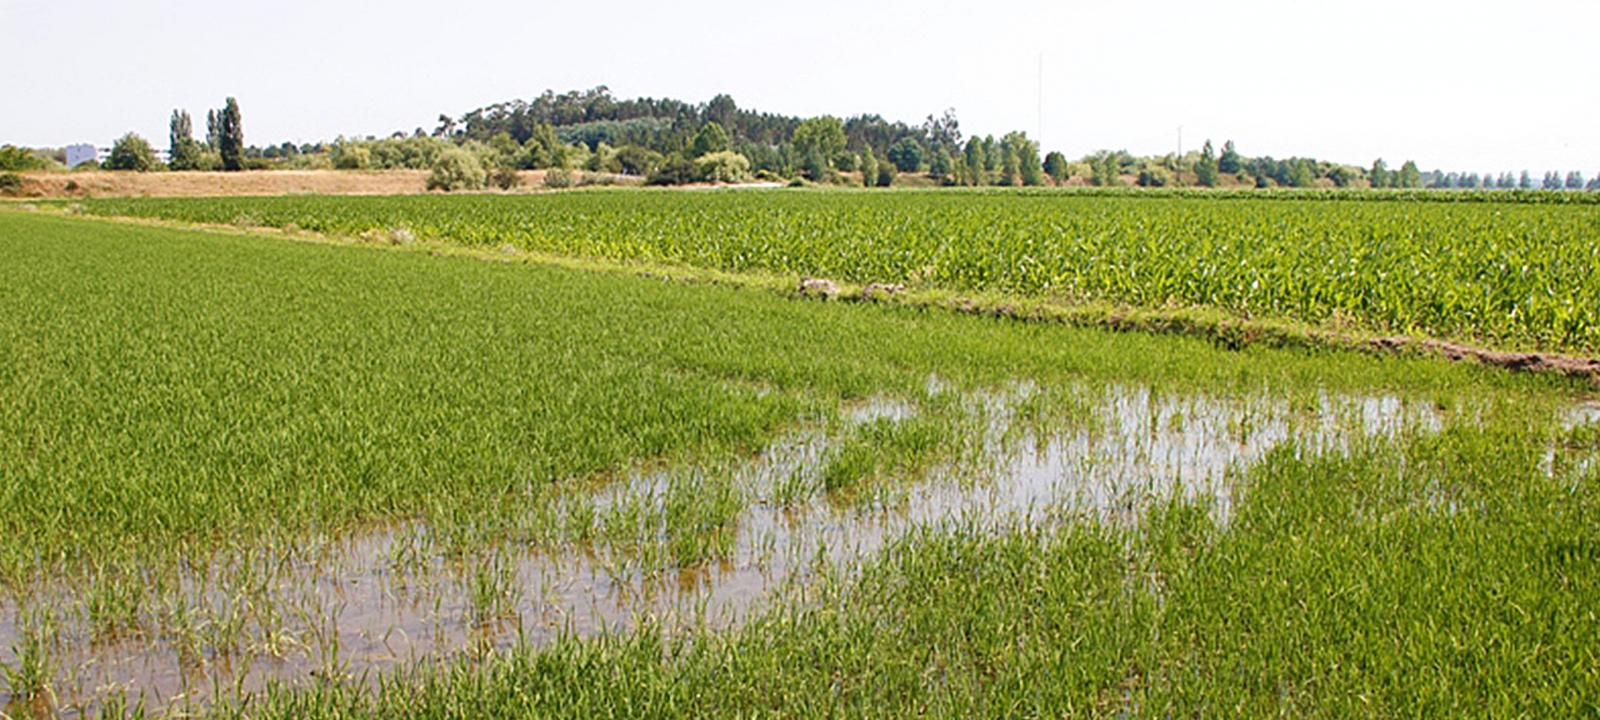 Campos de cultivo do arroz “carolino”